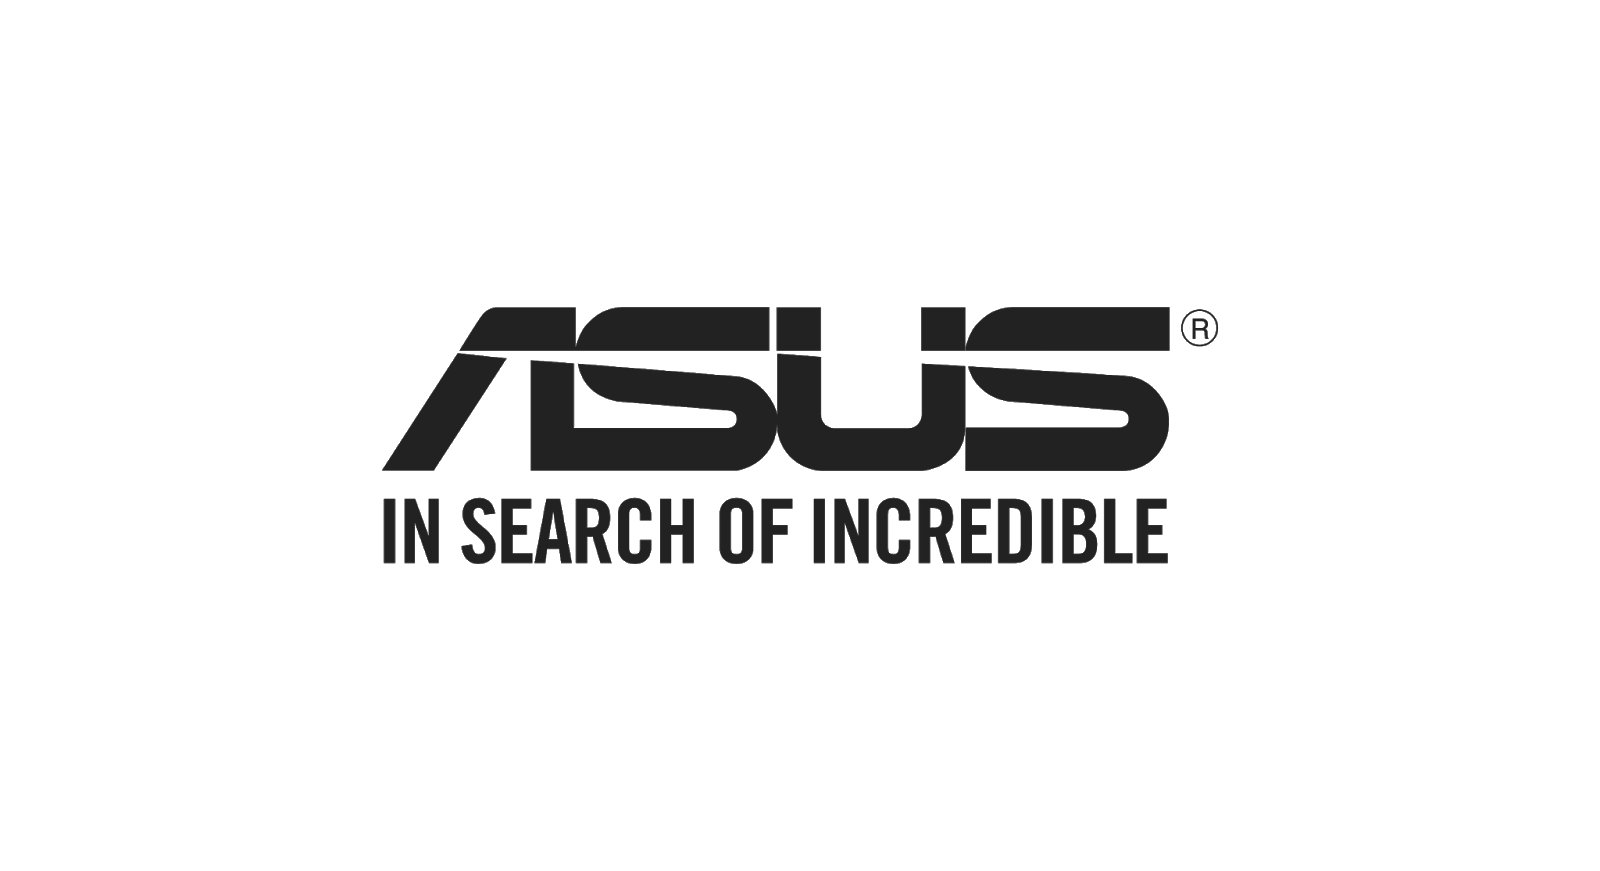 ASUS ha annunciato due nuovi modelli della serie Vivobook